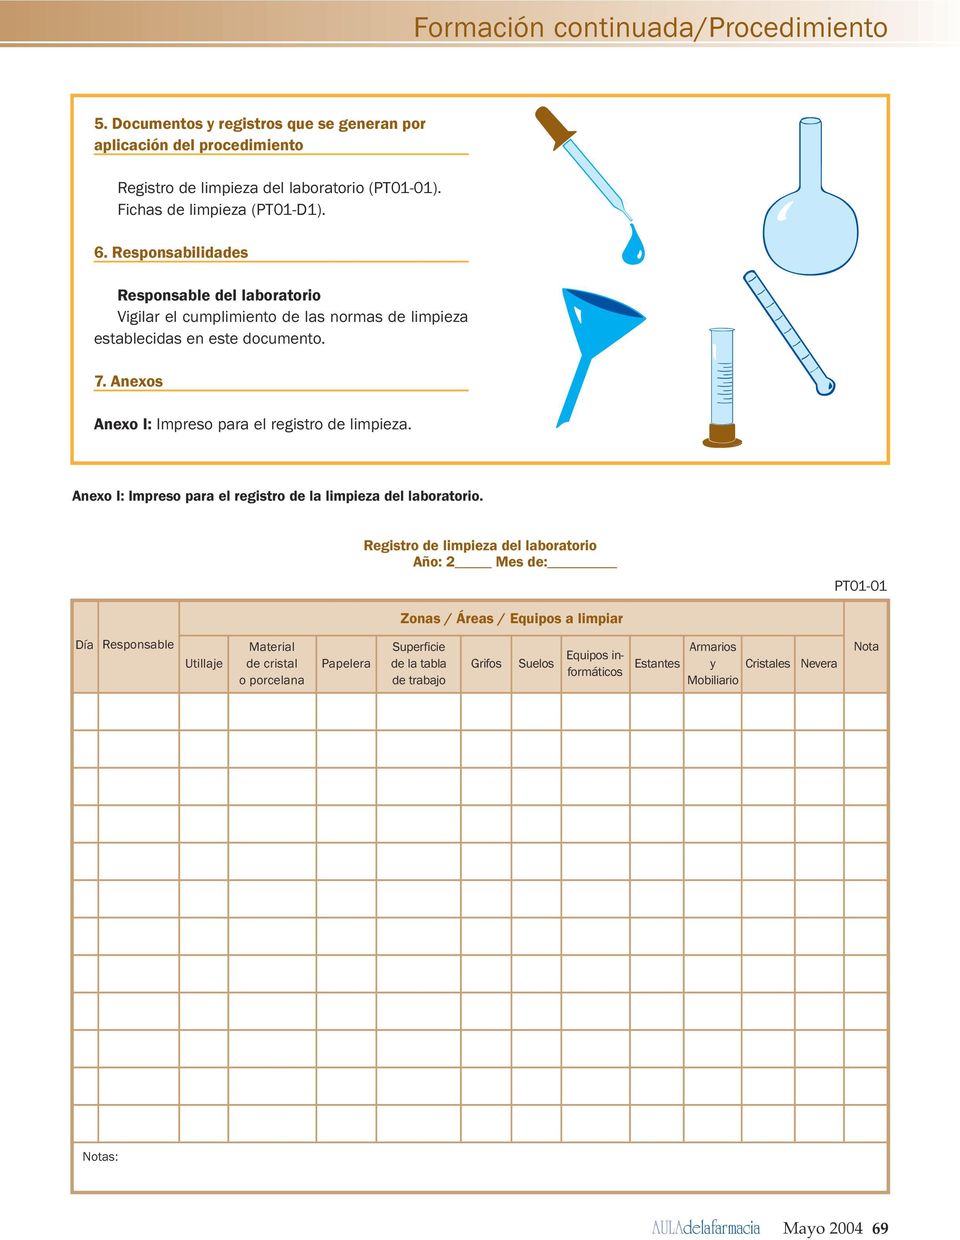 I: Impreso para el registro de la limpieza del laboratorio Registro de limpieza del laboratorio Año: 2 Mes de: PT01-01 Zonas / Áreas / Equipos a limpiar Día Responsable Utillaje Material